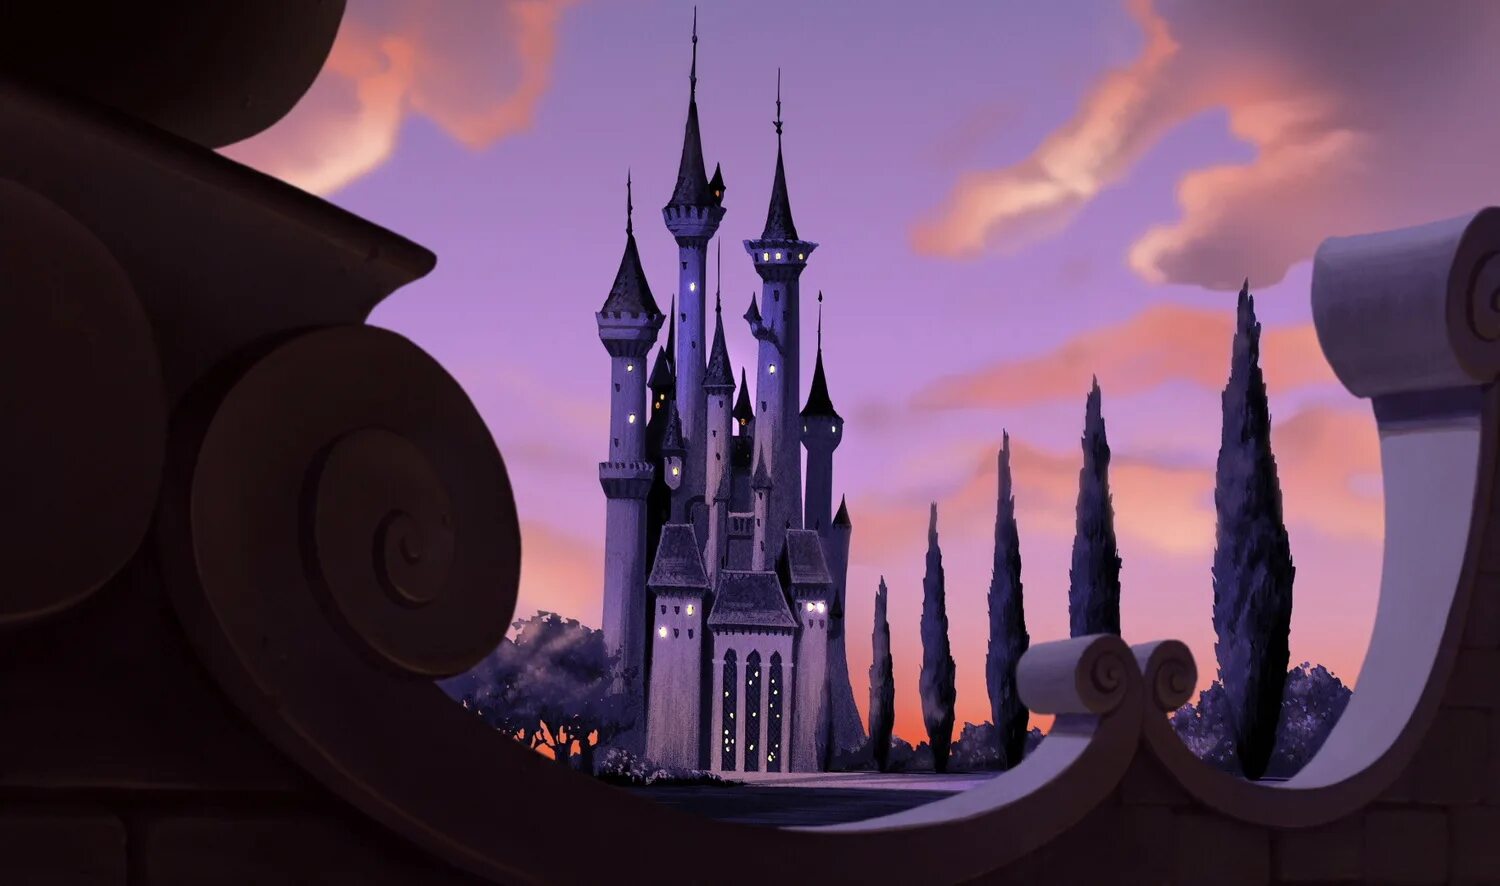 Золушка 2: мечты сбываются. Дворец Золушки Дисней. Комната Рапунцель в башне.